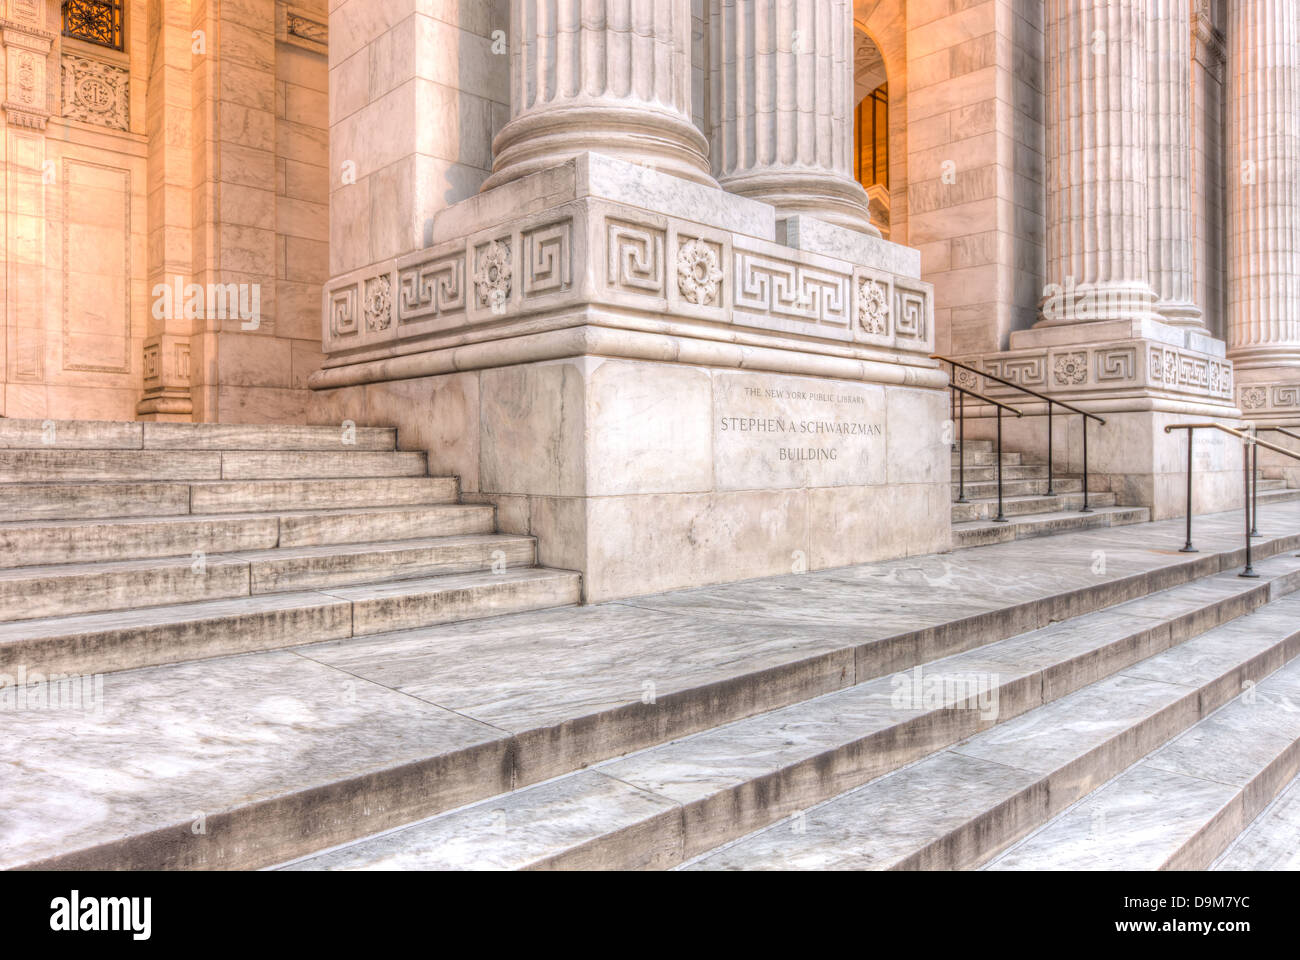 Korinthische Säulen flankieren die Haupteingängen, die New York Public Library Stephen A. Schwarzman Building in New York City. Stockfoto